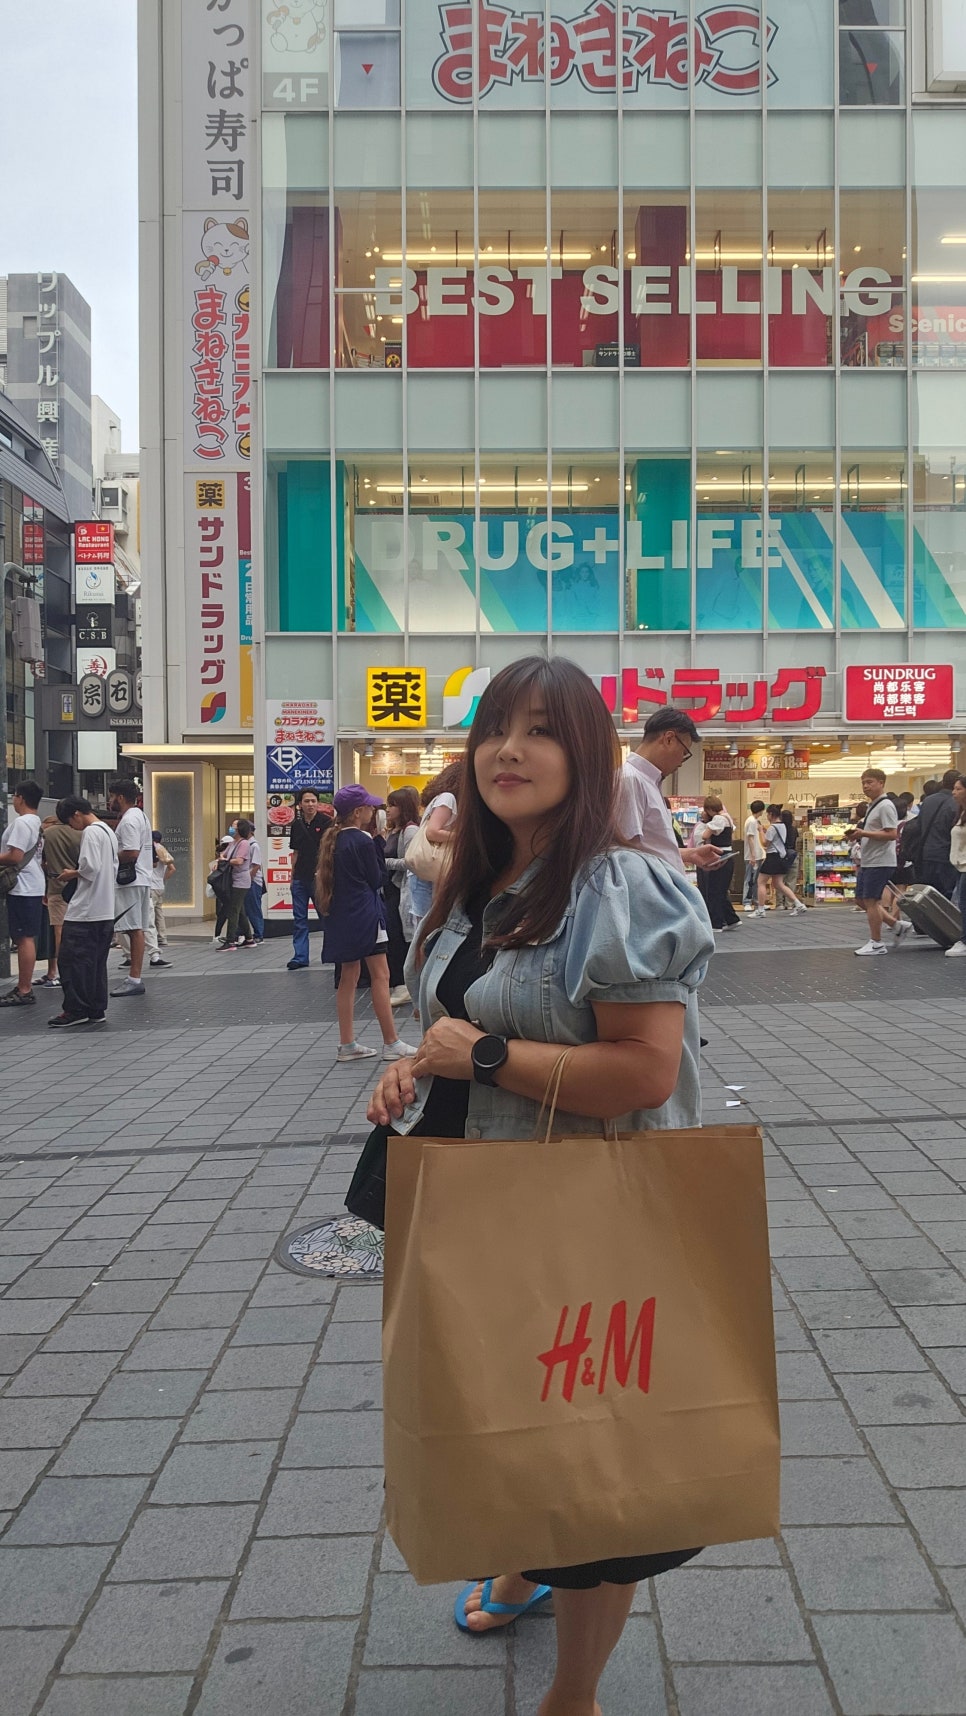 #포토덤프 1. 오사카 쇼핑으로 셀린느 득템